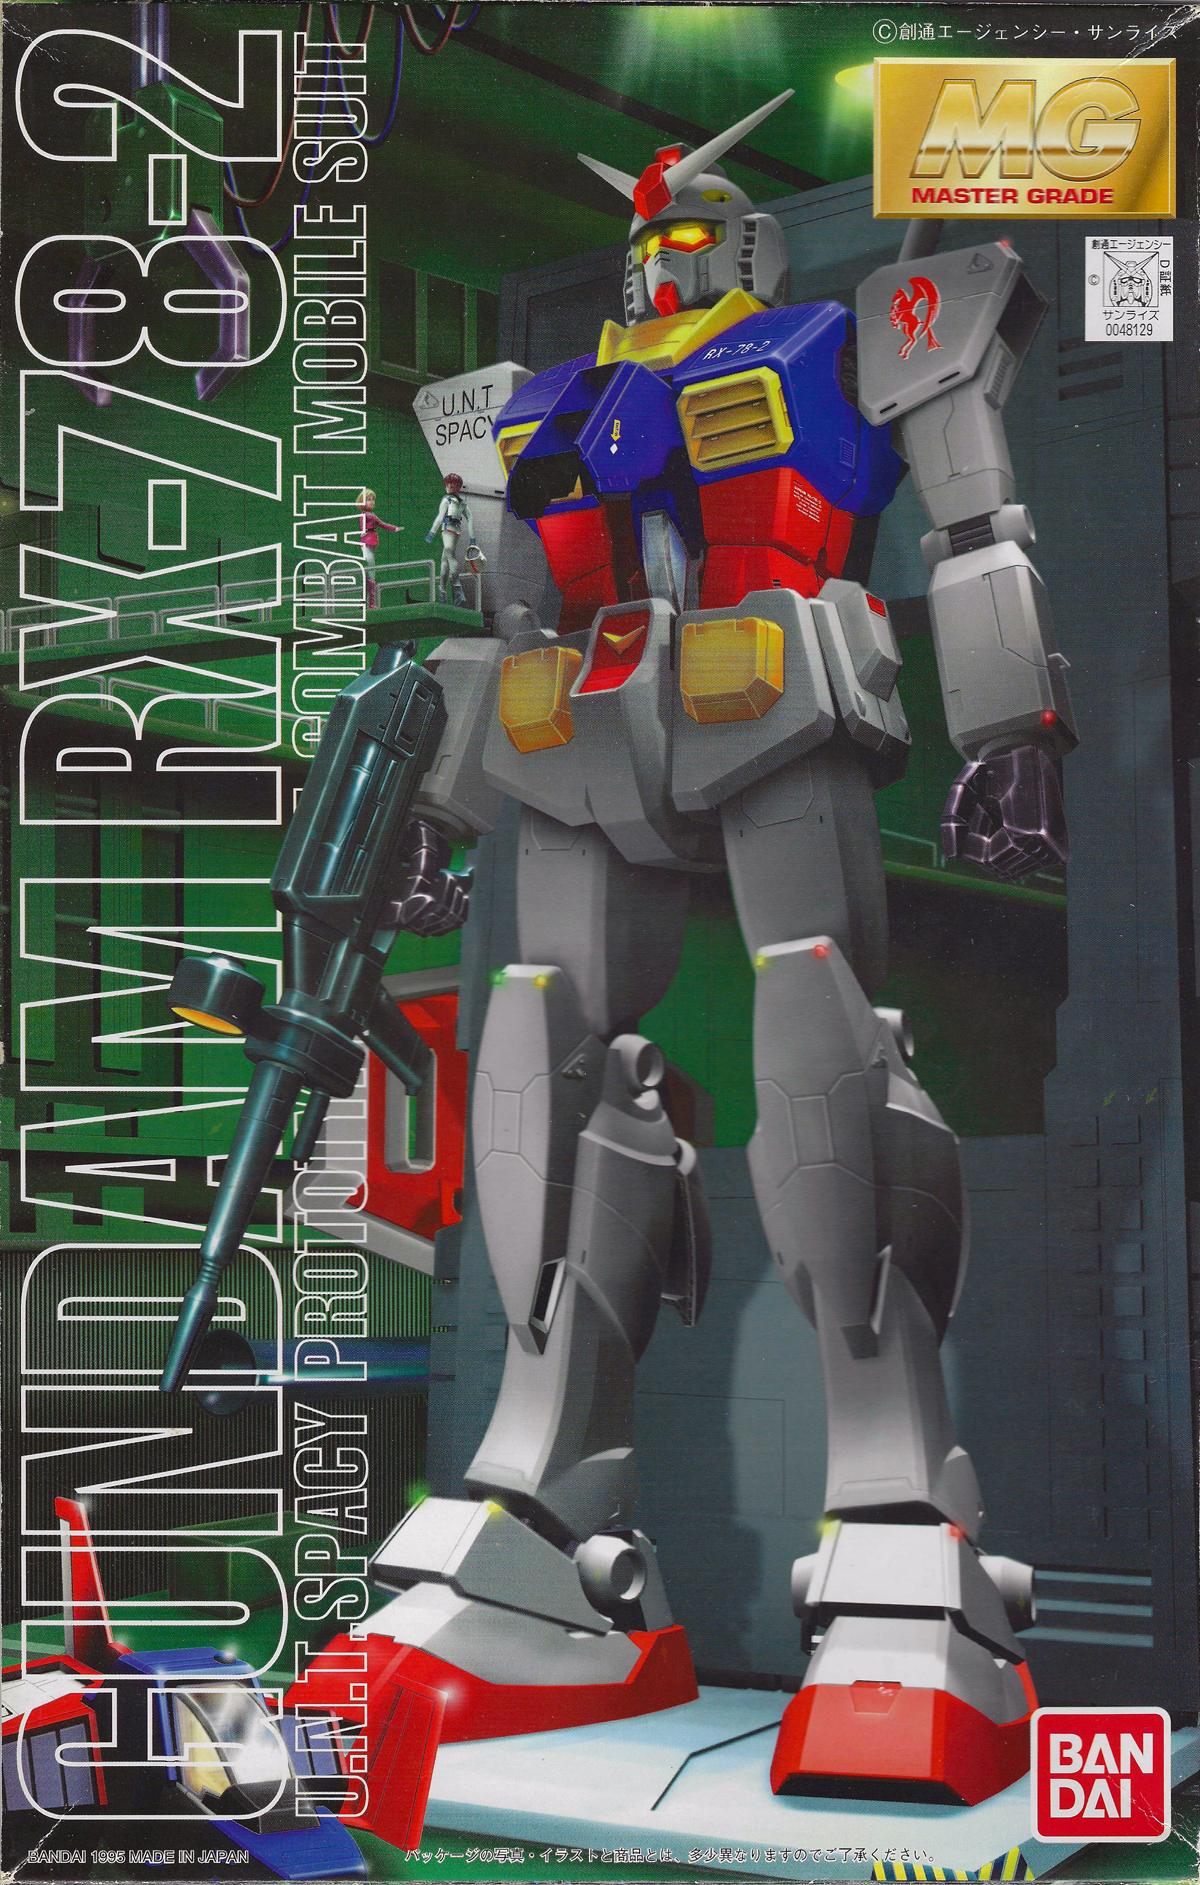 Master Grade The Gundam Wiki Fandom